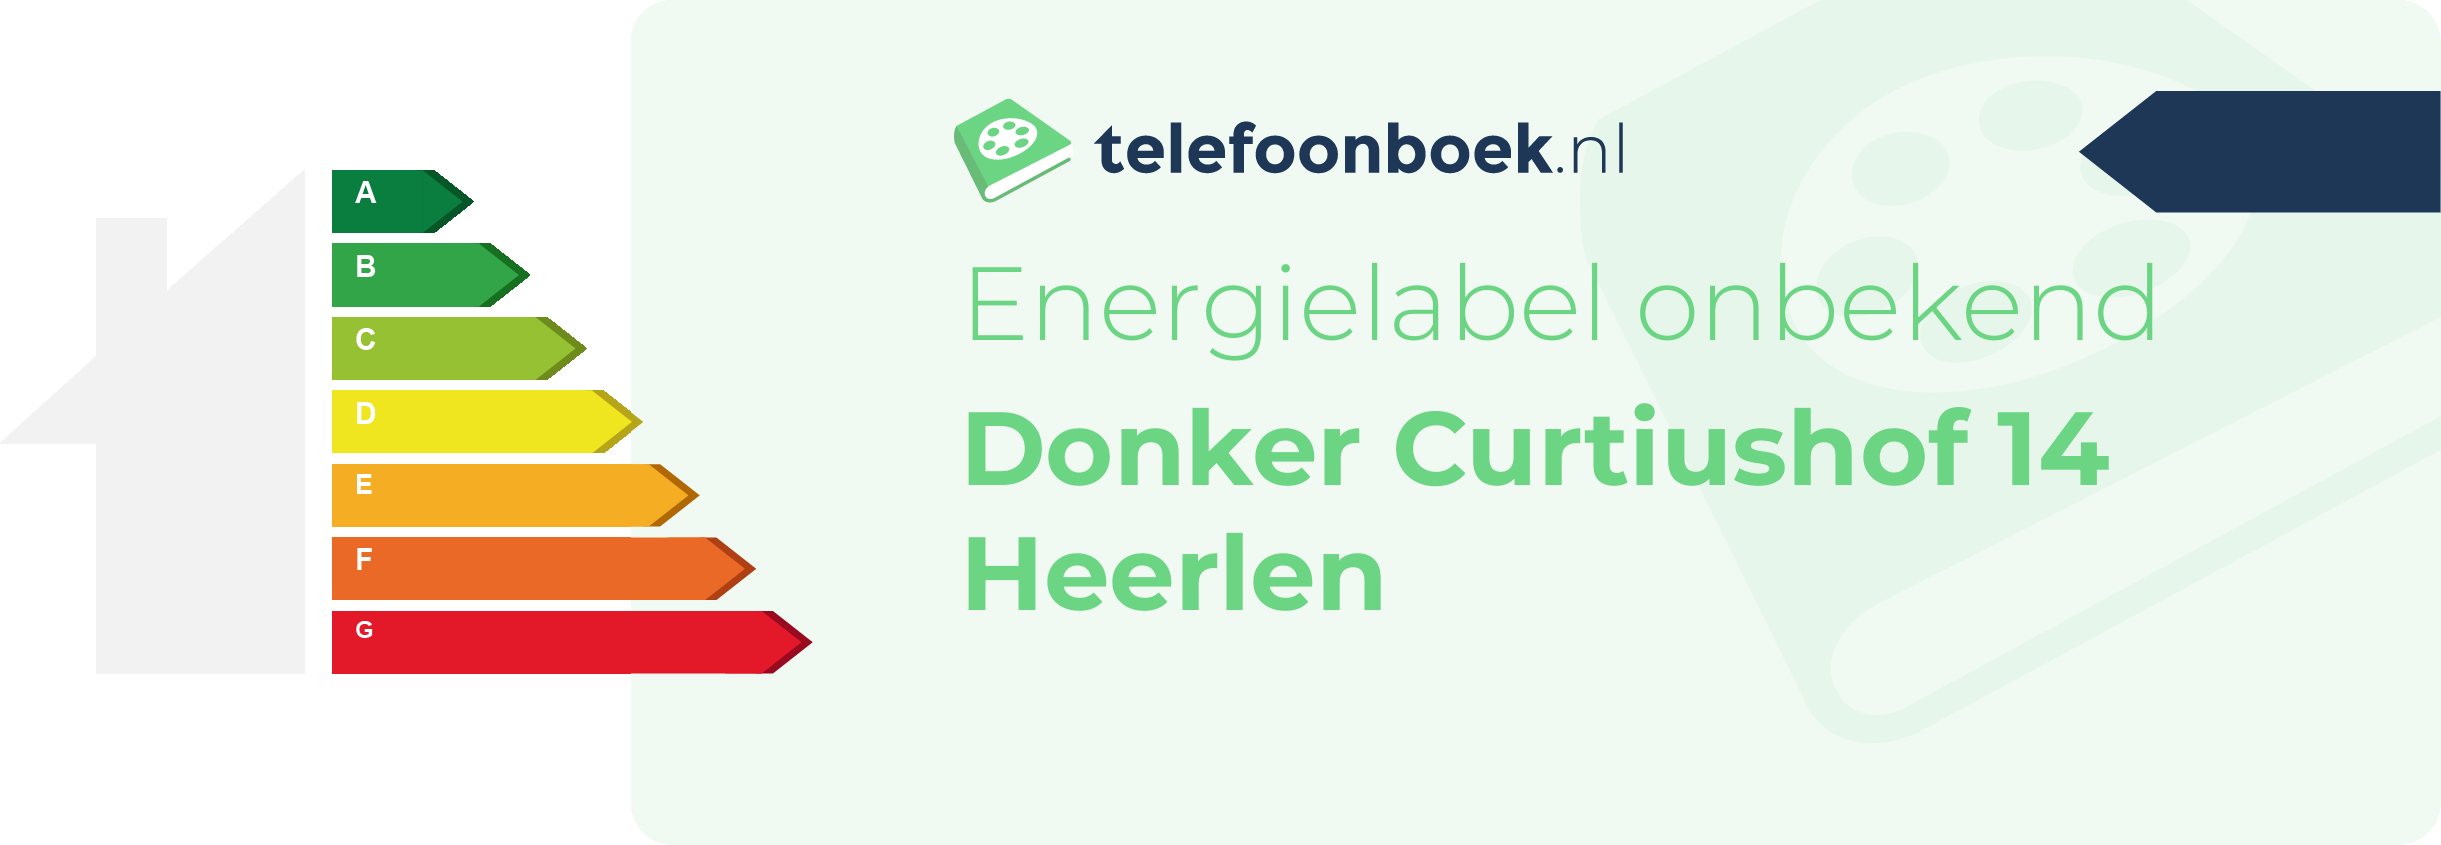 Energielabel Donker Curtiushof 14 Heerlen